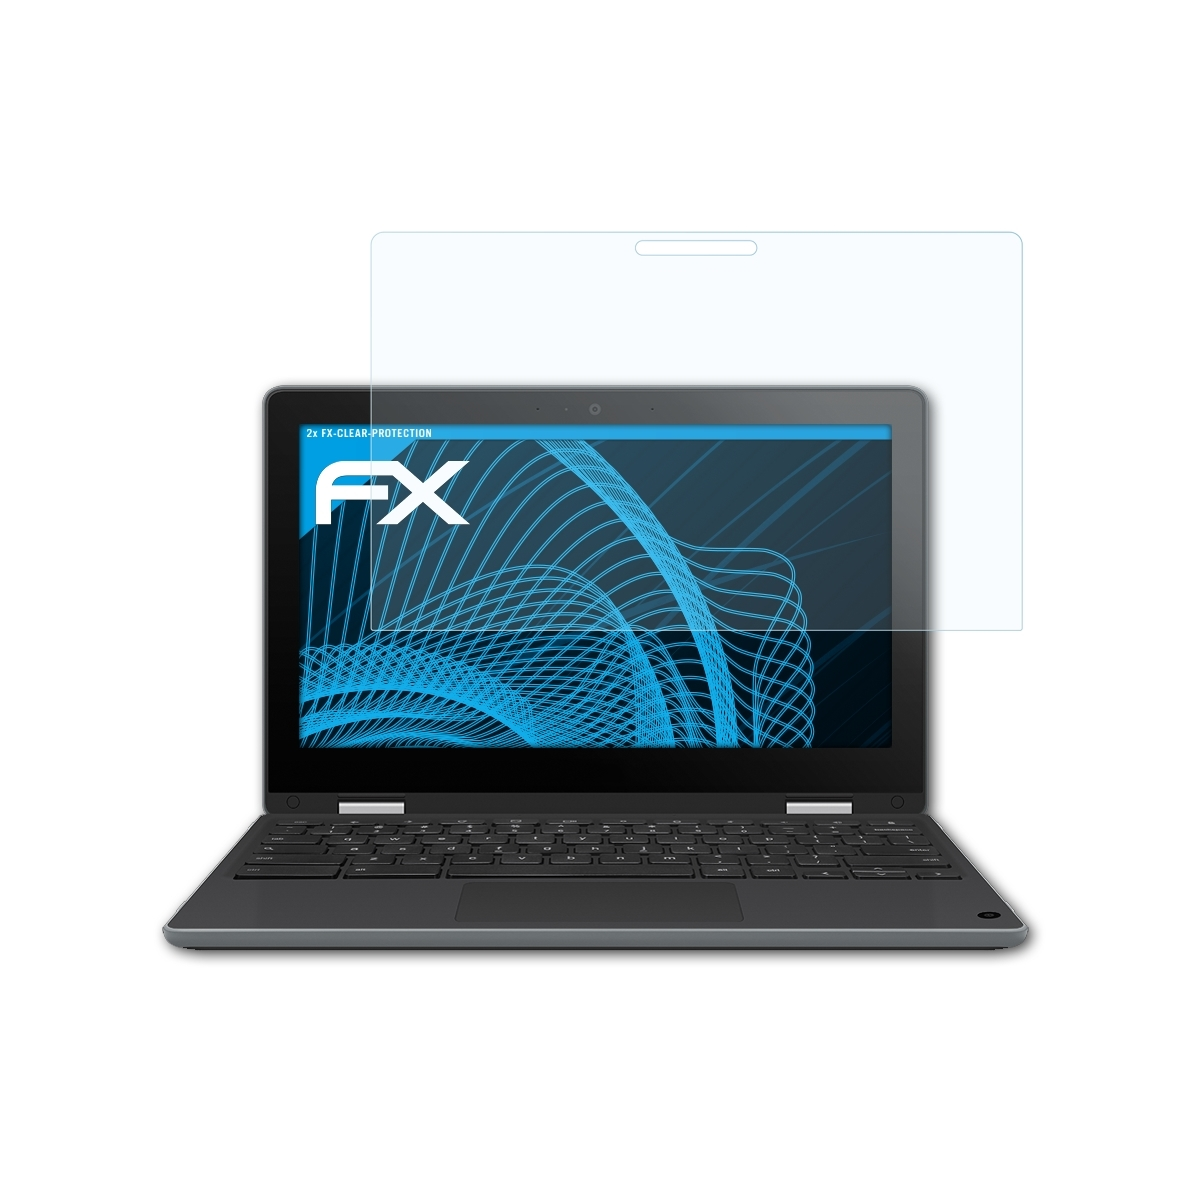 (C214MA-BW0163)) ATFOLIX Flip Asus Chromebook Displayschutz(für FX-Clear 2x